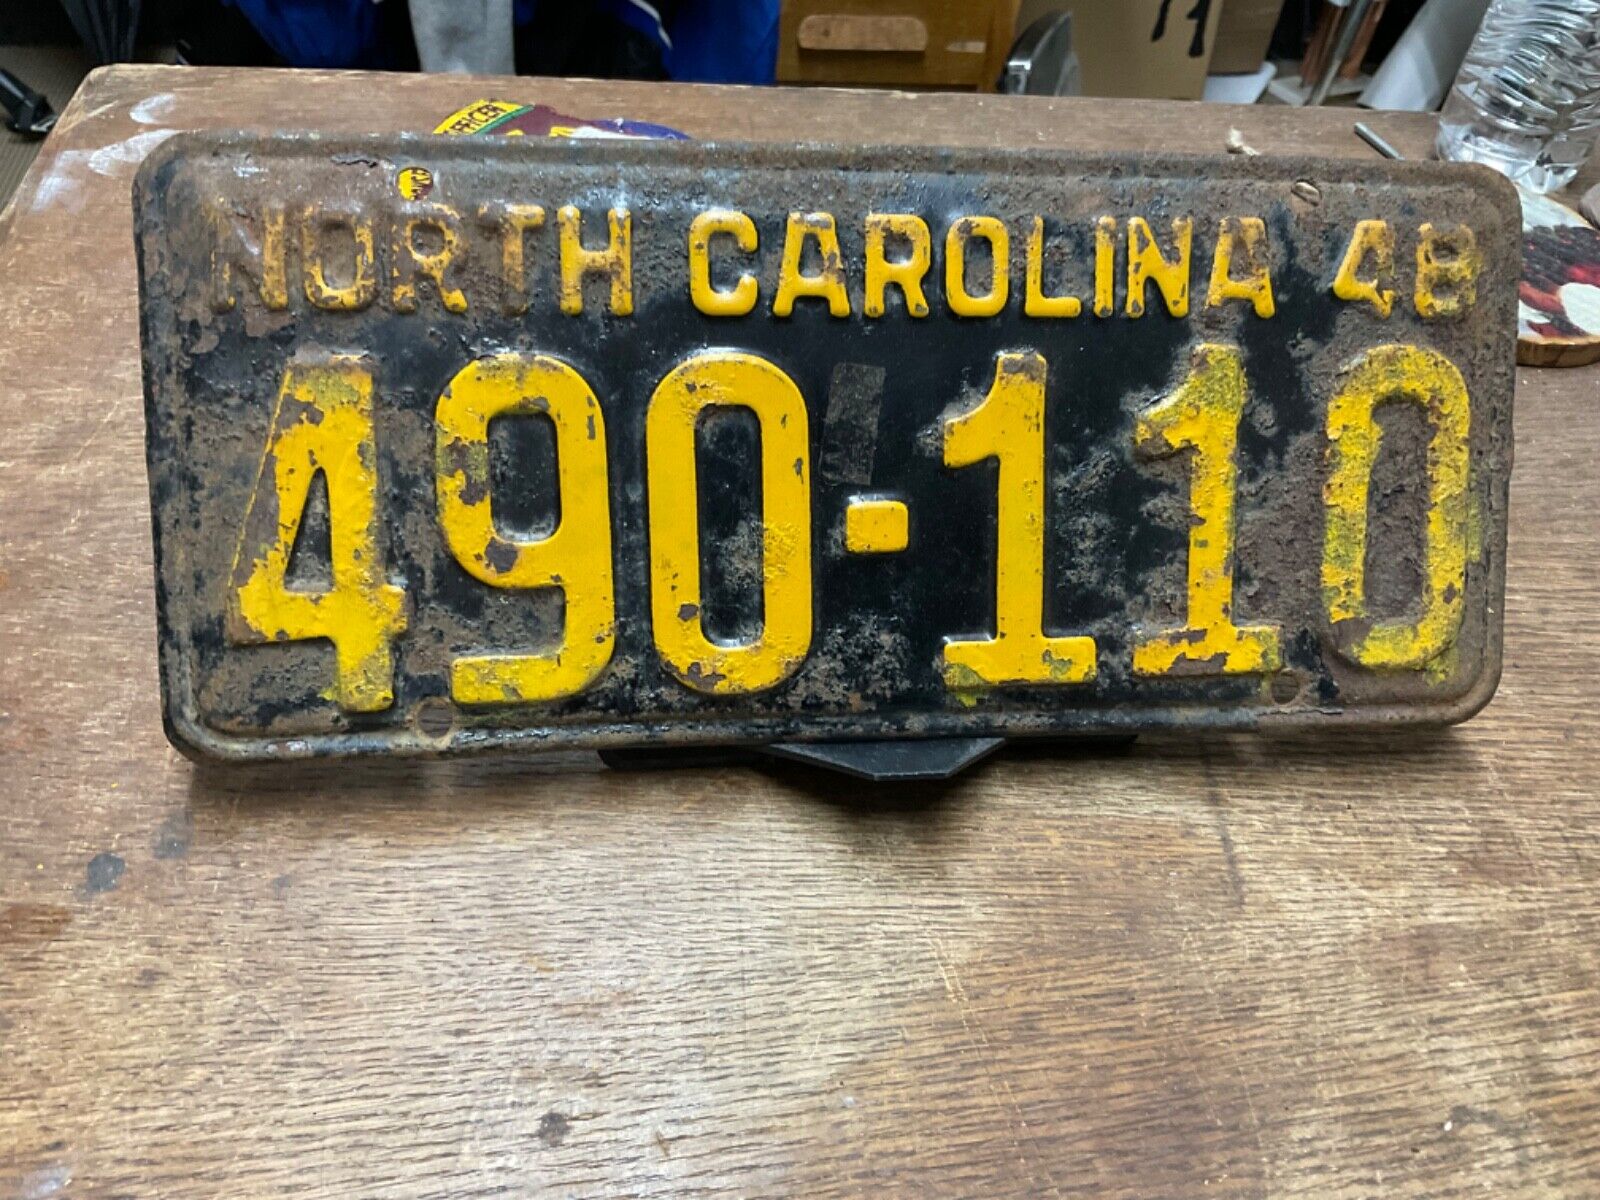 1948 North Carolina Plate 490 110 Vintage Rustic